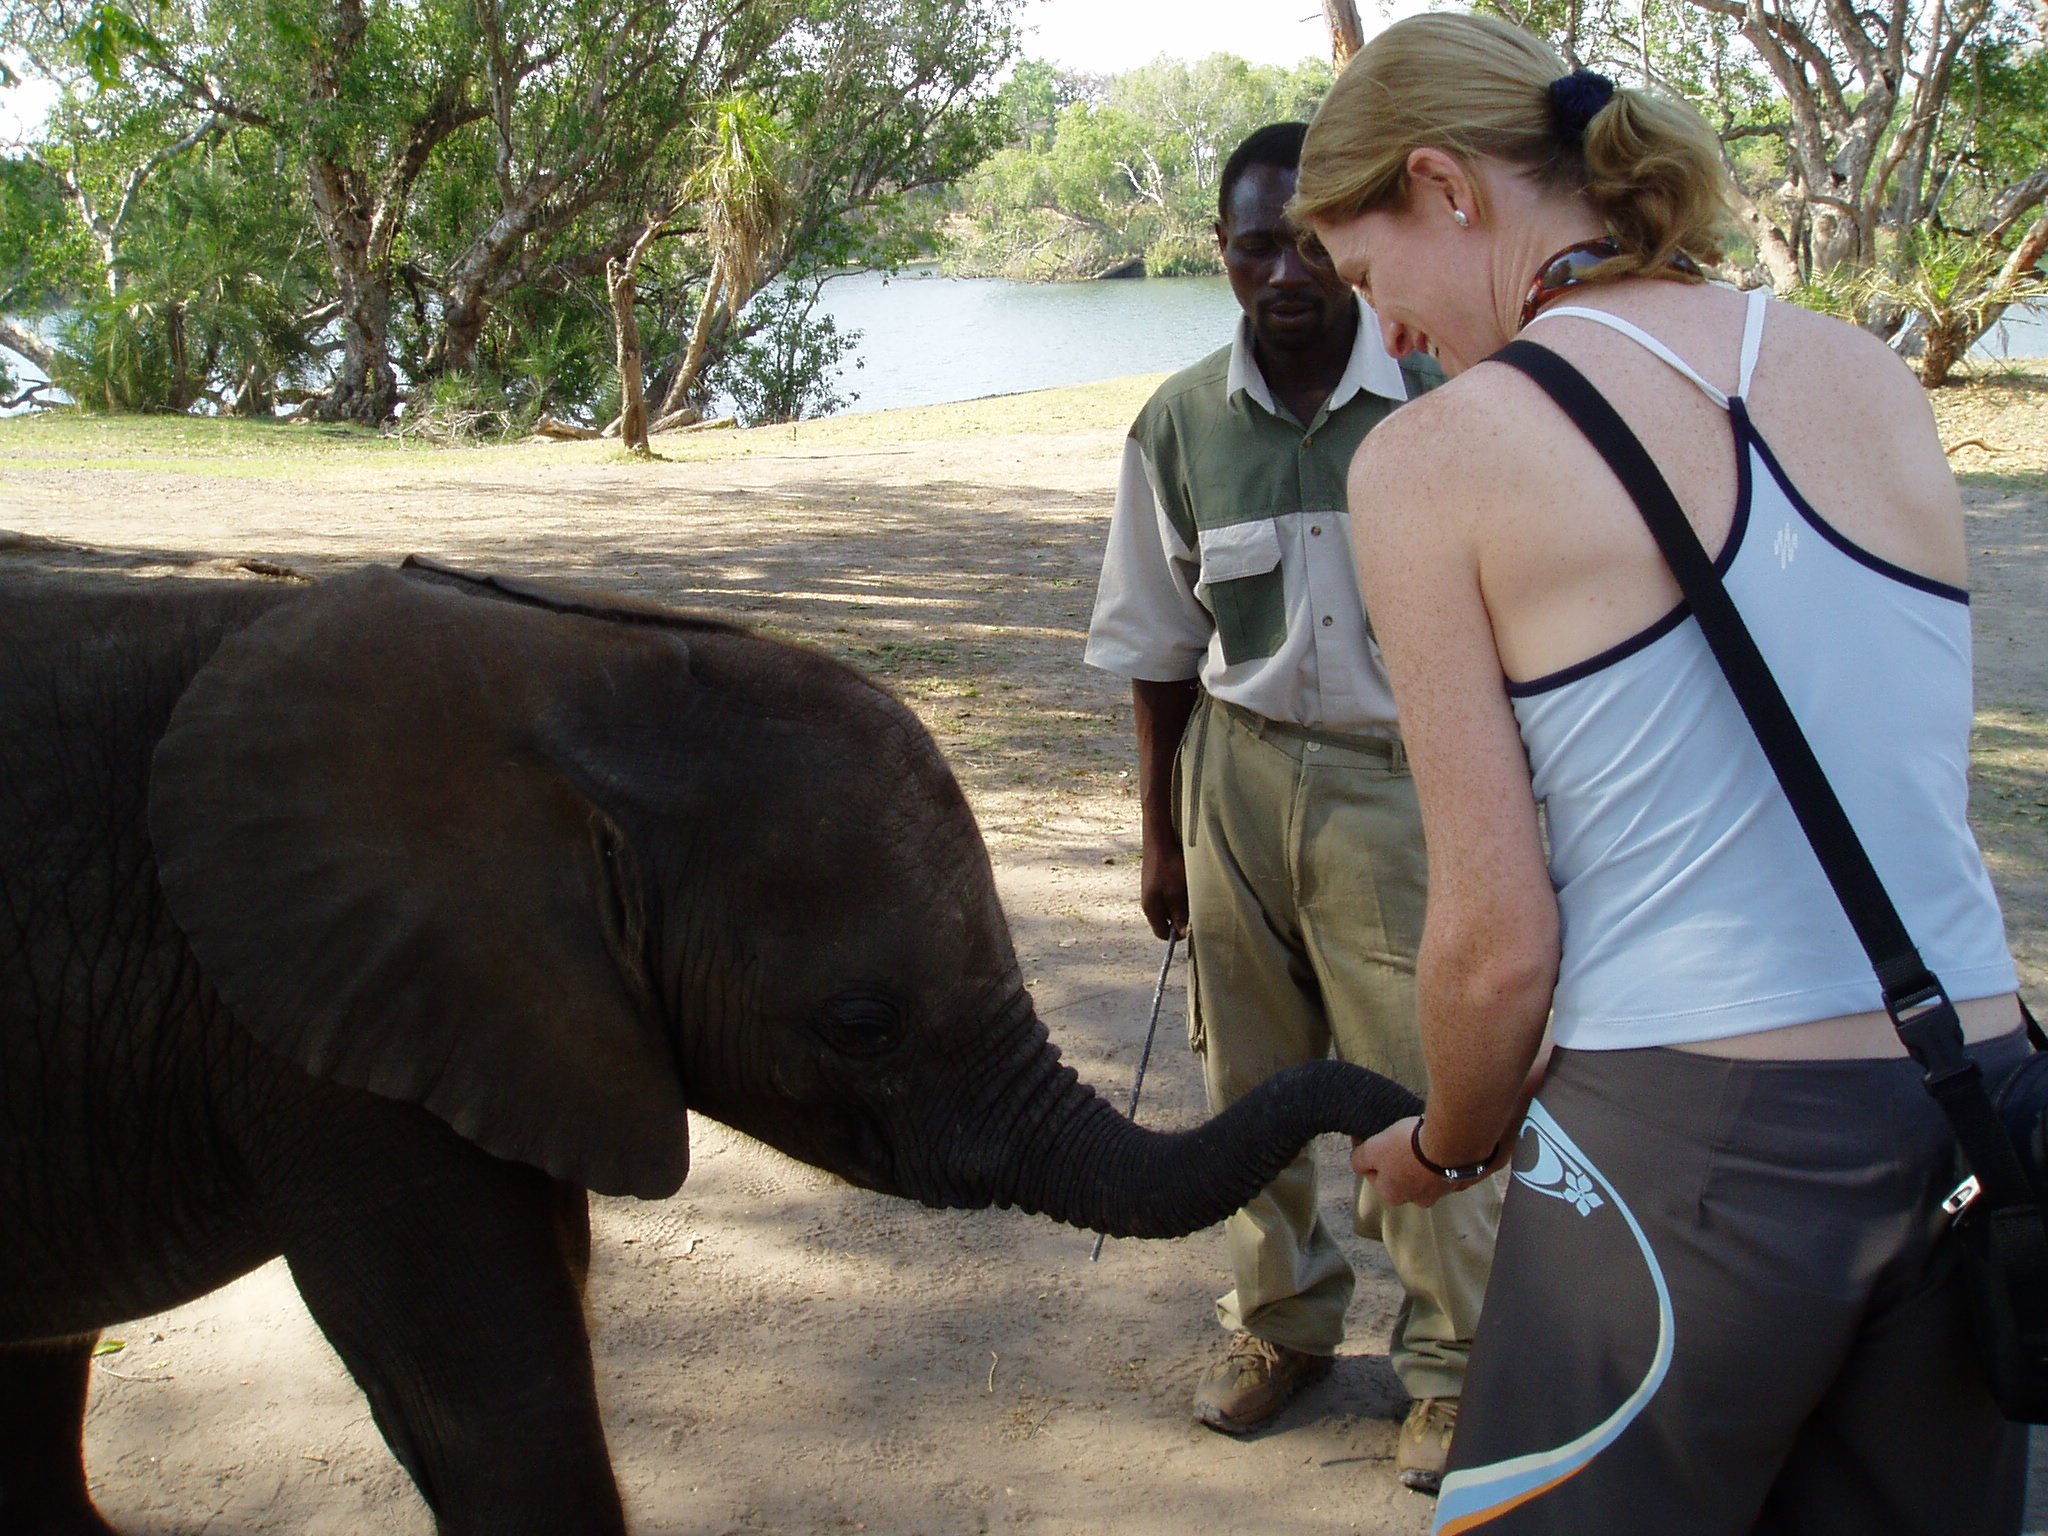 A woman feeding elephants at a sanctuary